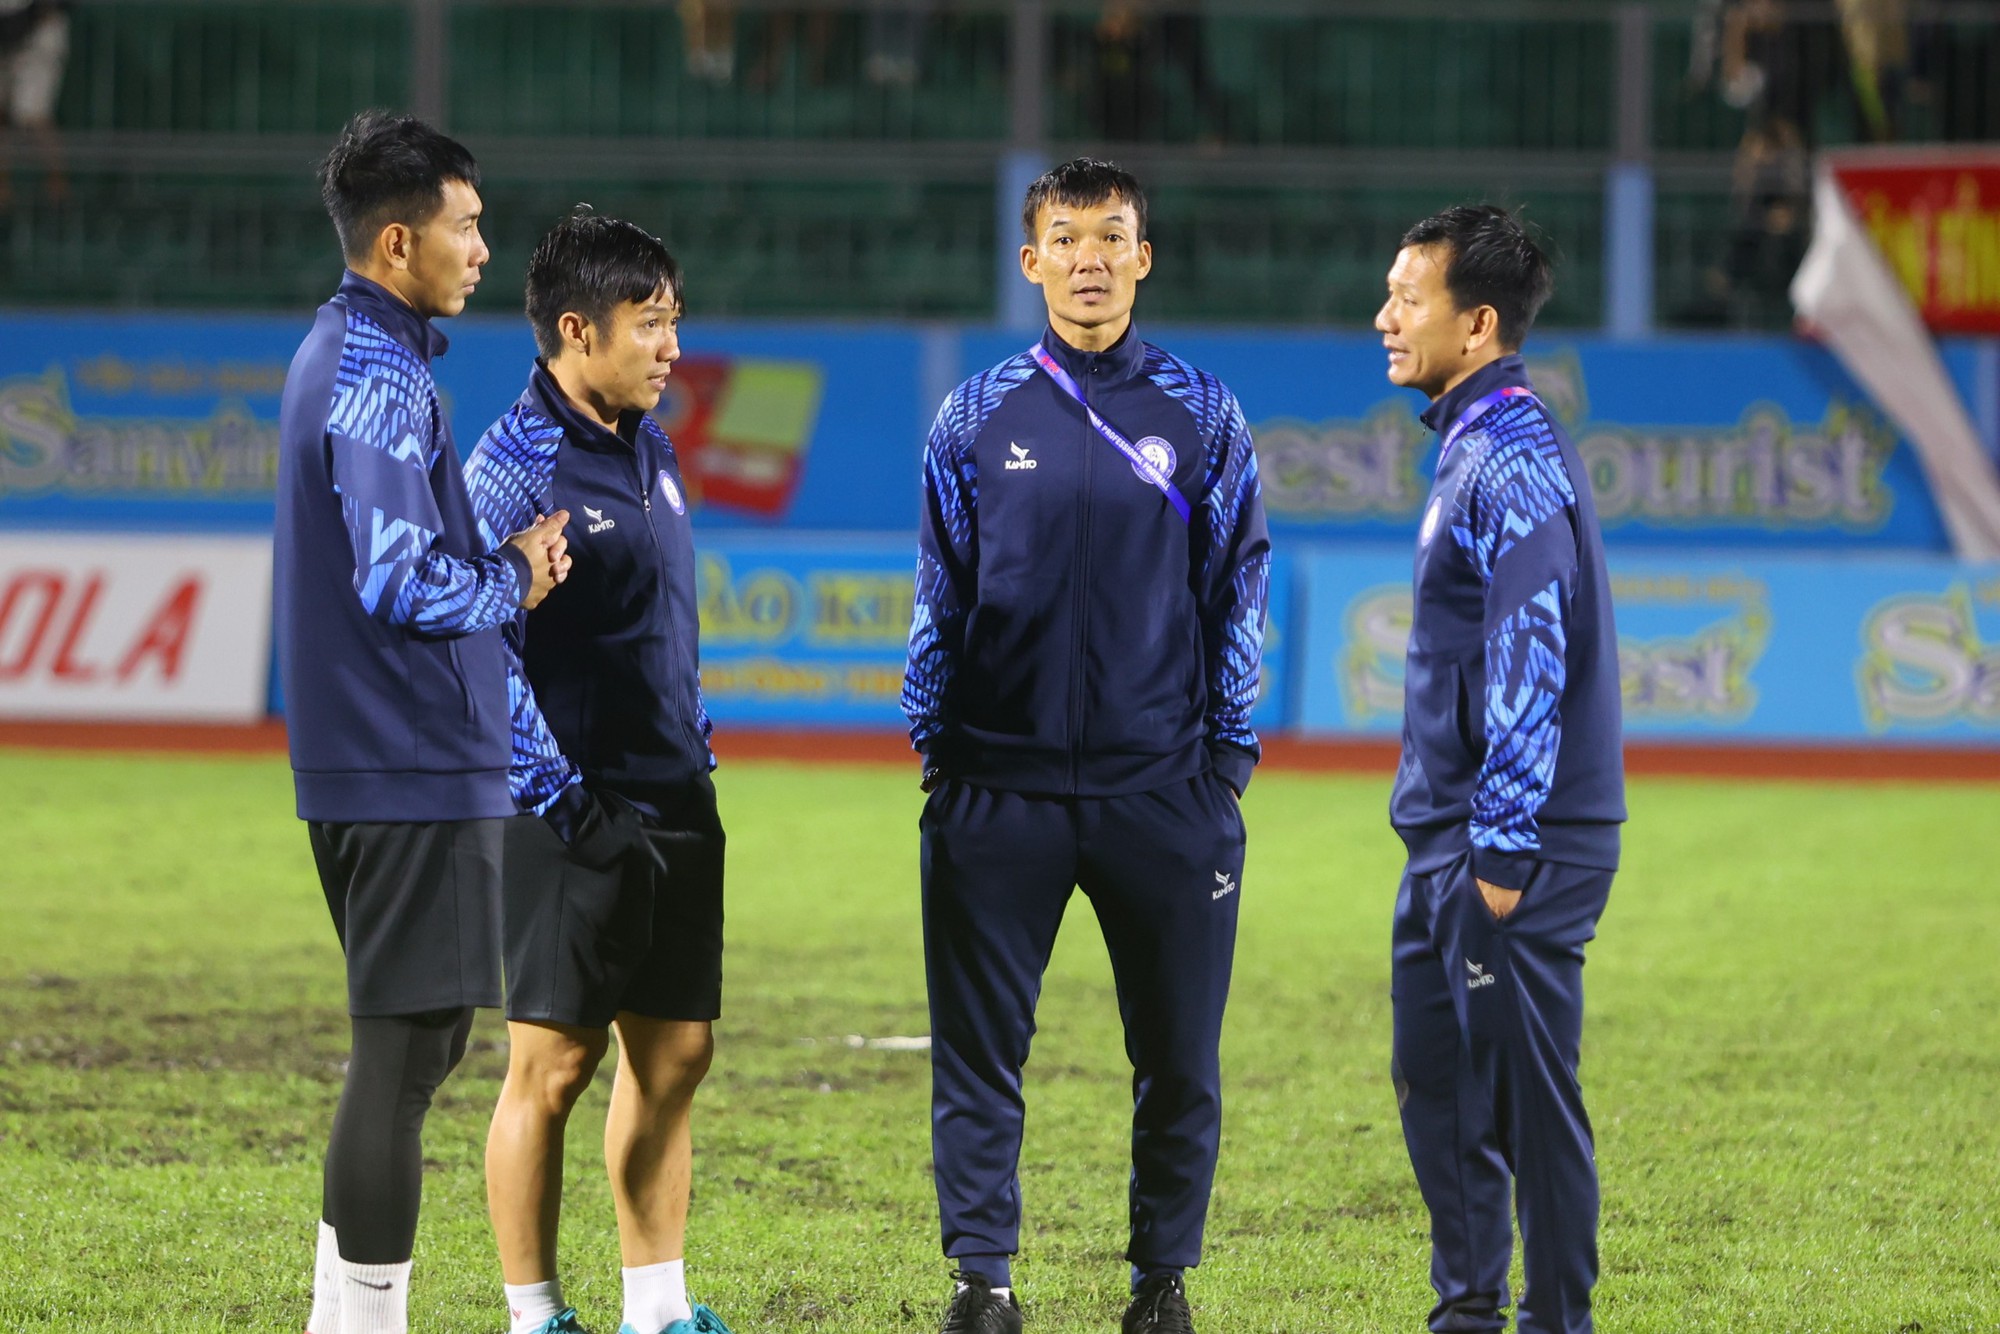 BHL CLB Khánh Hòa dẫn đầu bởi HLV Trọng Bình (thứ 2 từ phải sang) và trợ lý Lê Tấn Tài